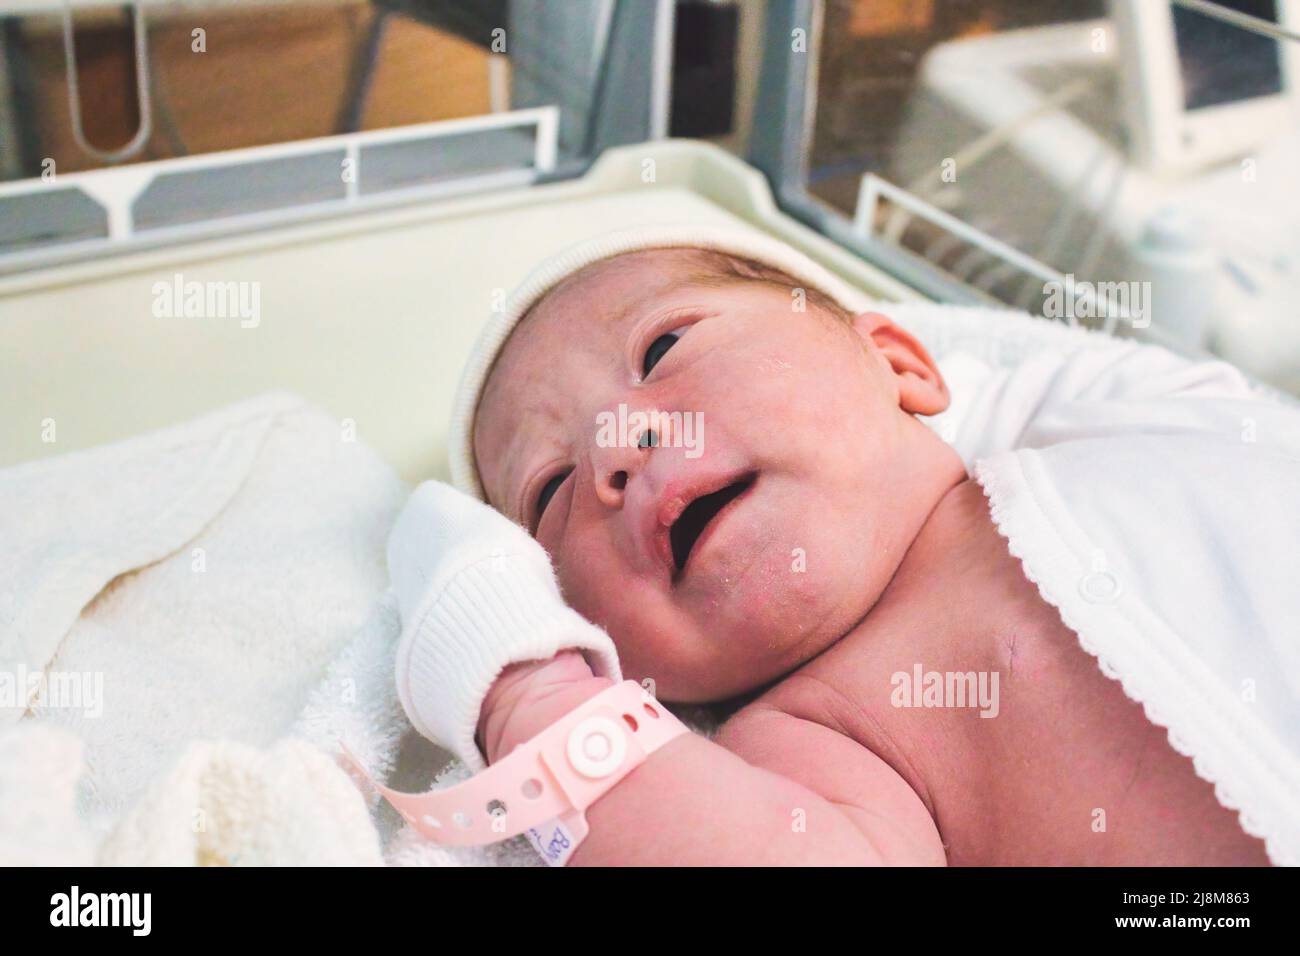 Neonato appena nato in ospedale nel reparto di maternità con un'etichetta di plastica sul polso Foto Stock